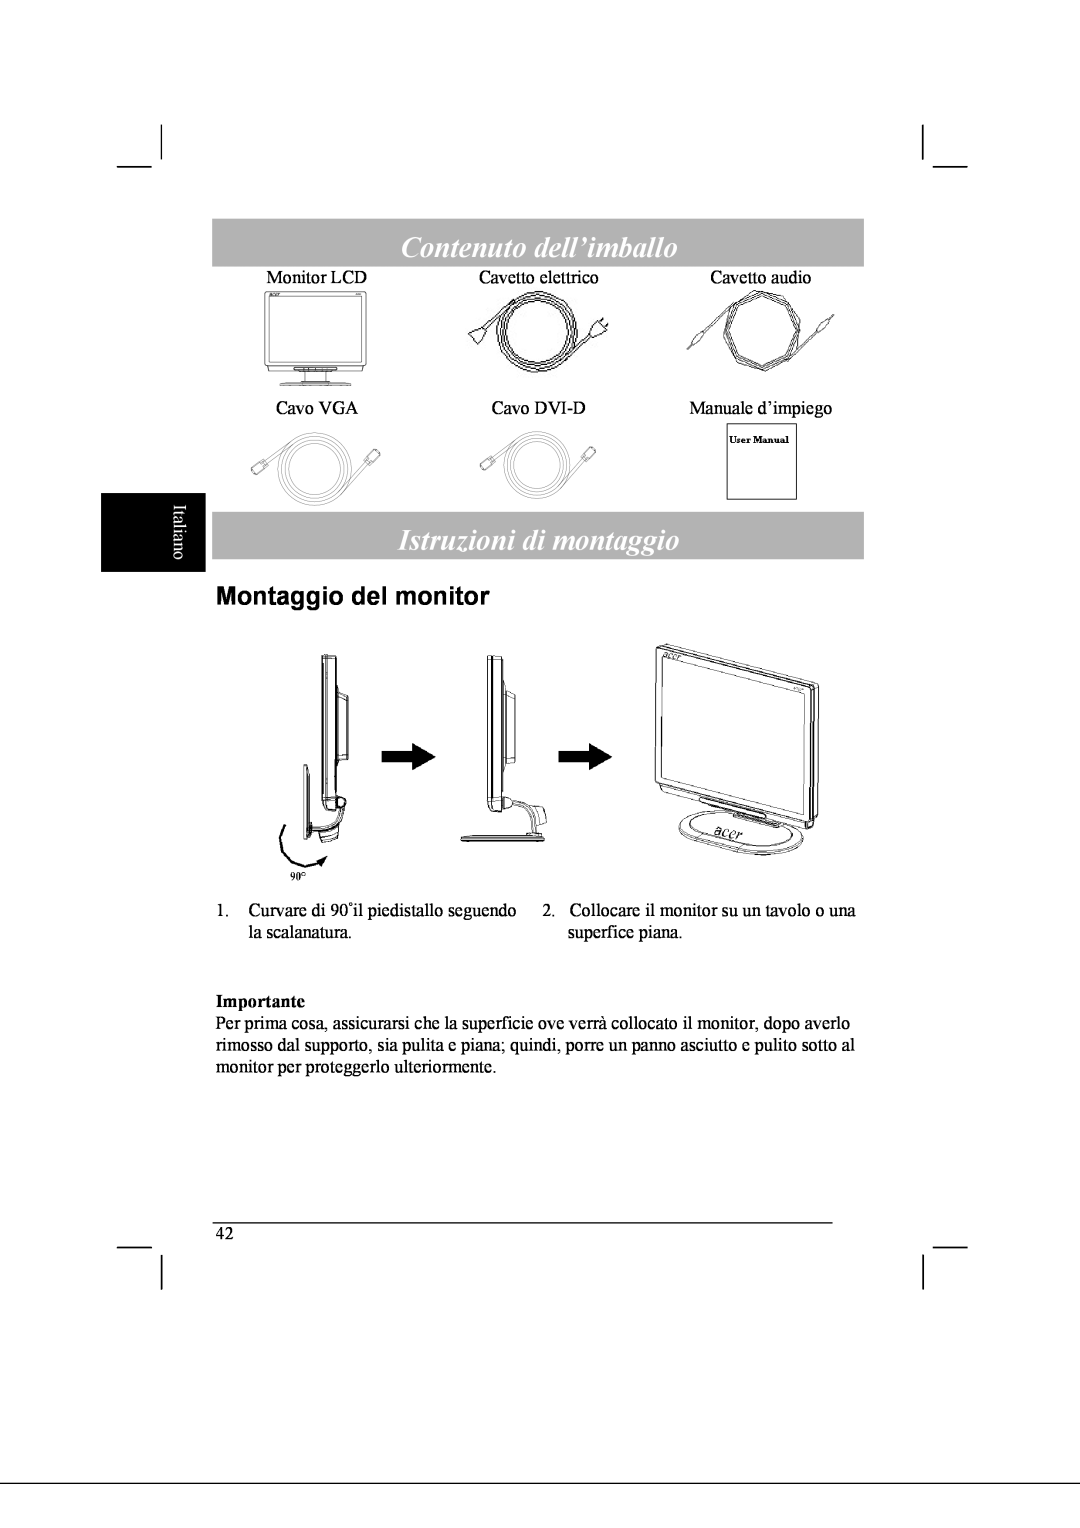 Acer AL2021 manual Contenuto dell’imballo, Istruzioni di montaggio, Montaggio del monitor, Italiano 